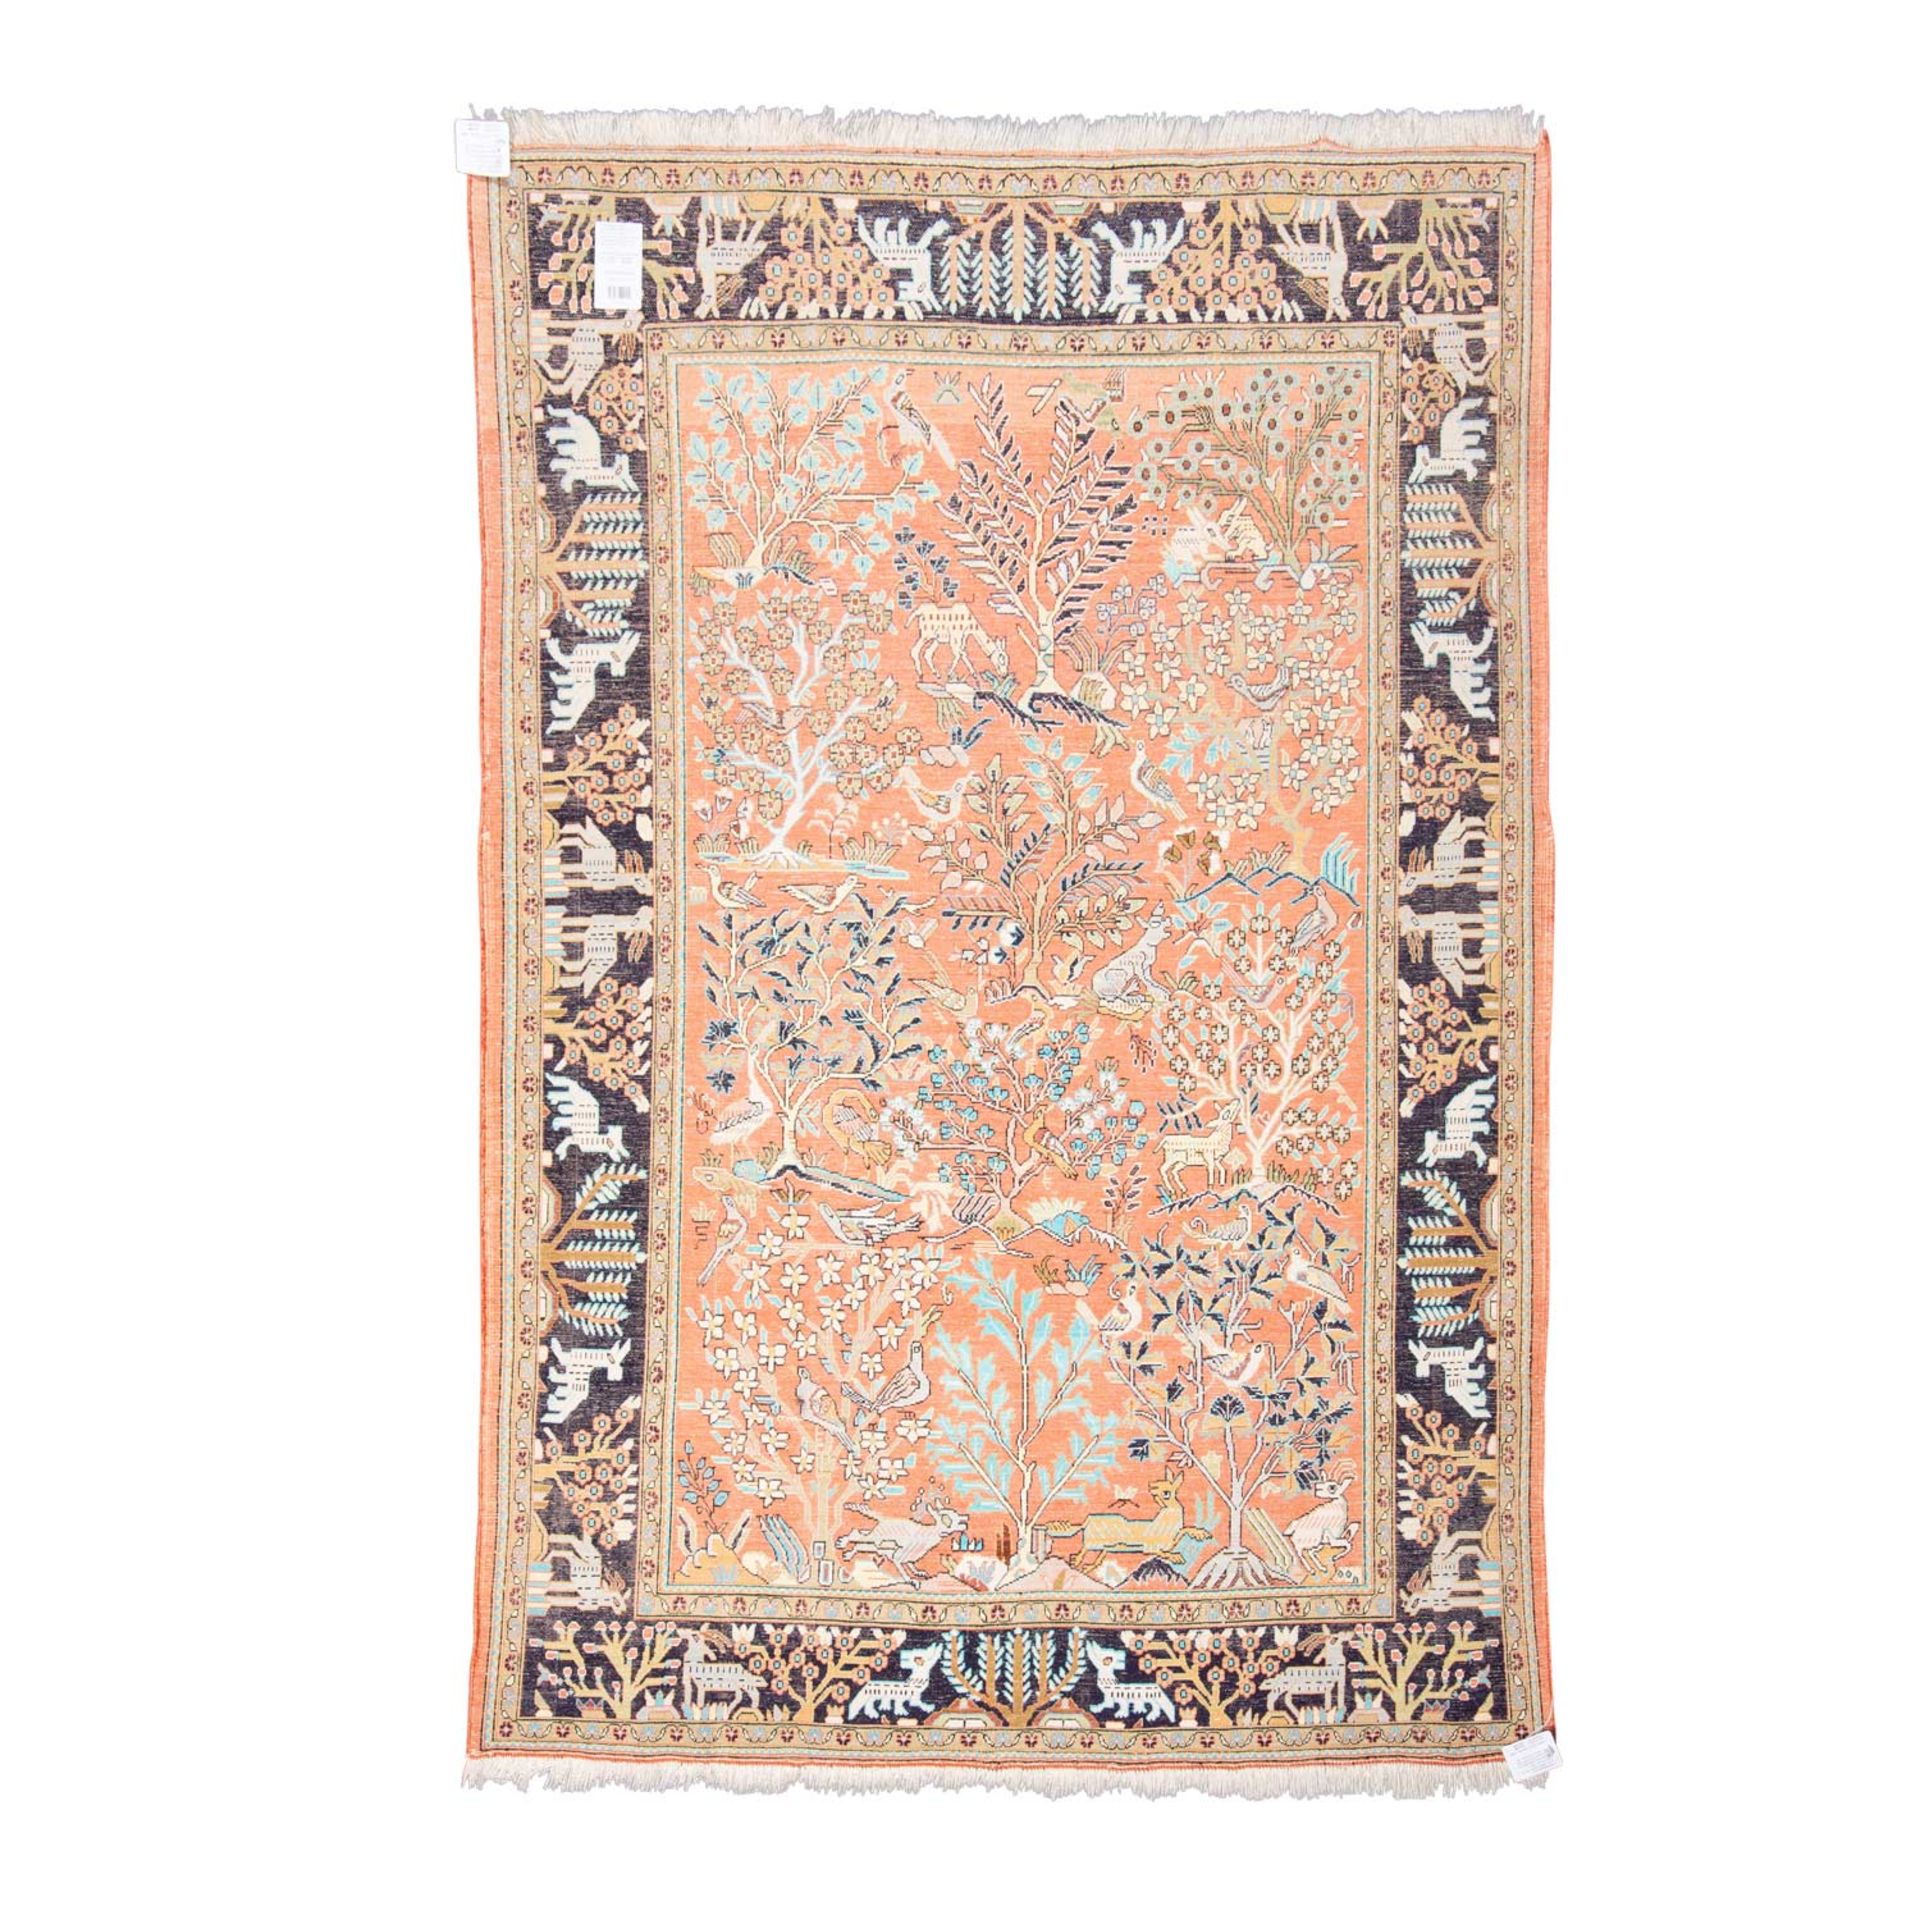 Orientteppich aus KASCHMIR-Seide, 20. Jh., 160x104 cm. - Bild 2 aus 4